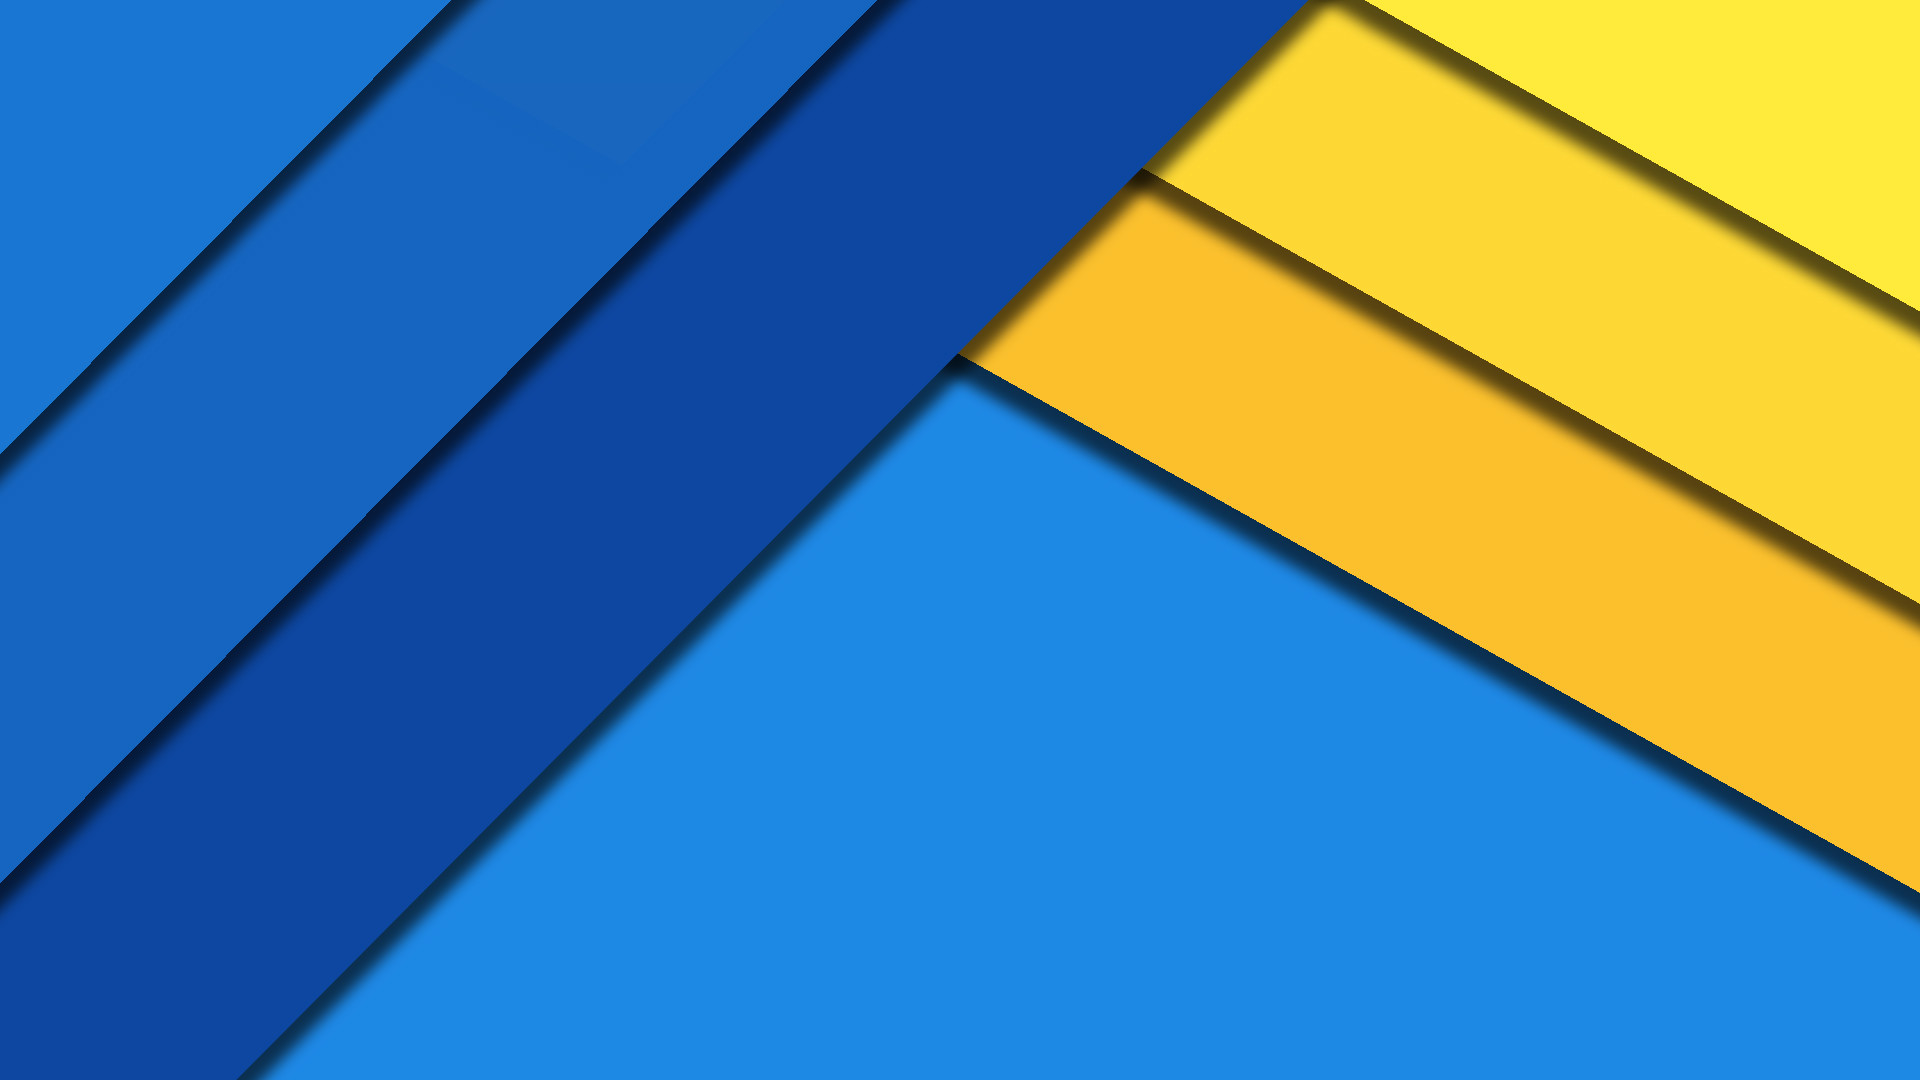 Blue Yellow Material , 1, Material Wallpaper - Hd Wallpapers Blue And Yellow , HD Wallpaper & Backgrounds